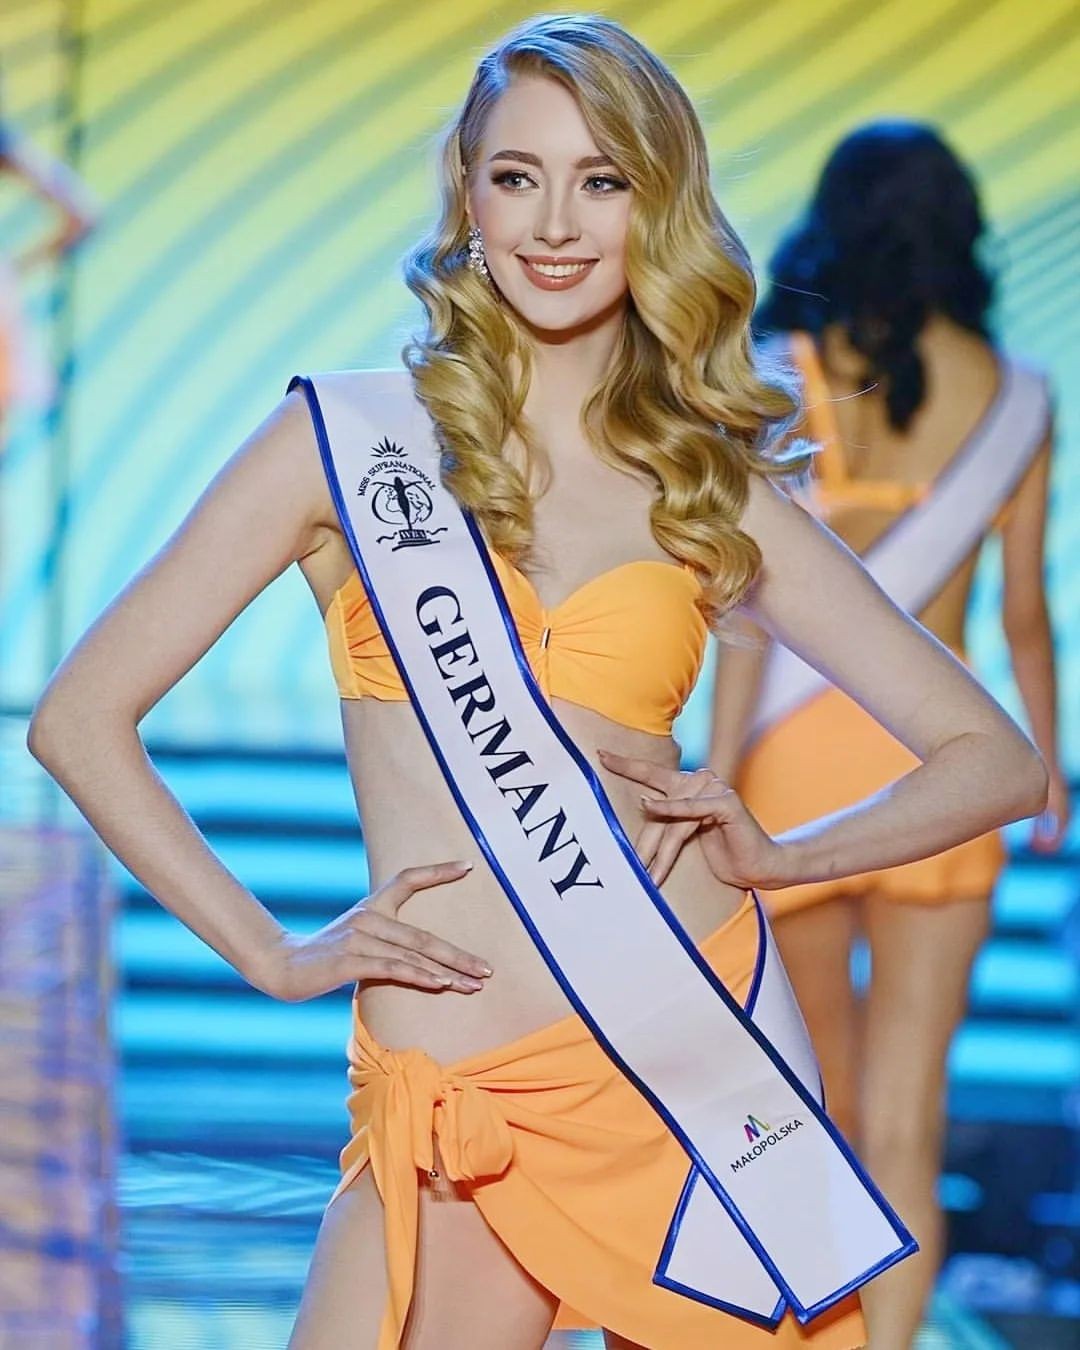 Đương kim Hoa hậu Quốc tế hiếm hoi mặc áo tắm - Ảnh 7.